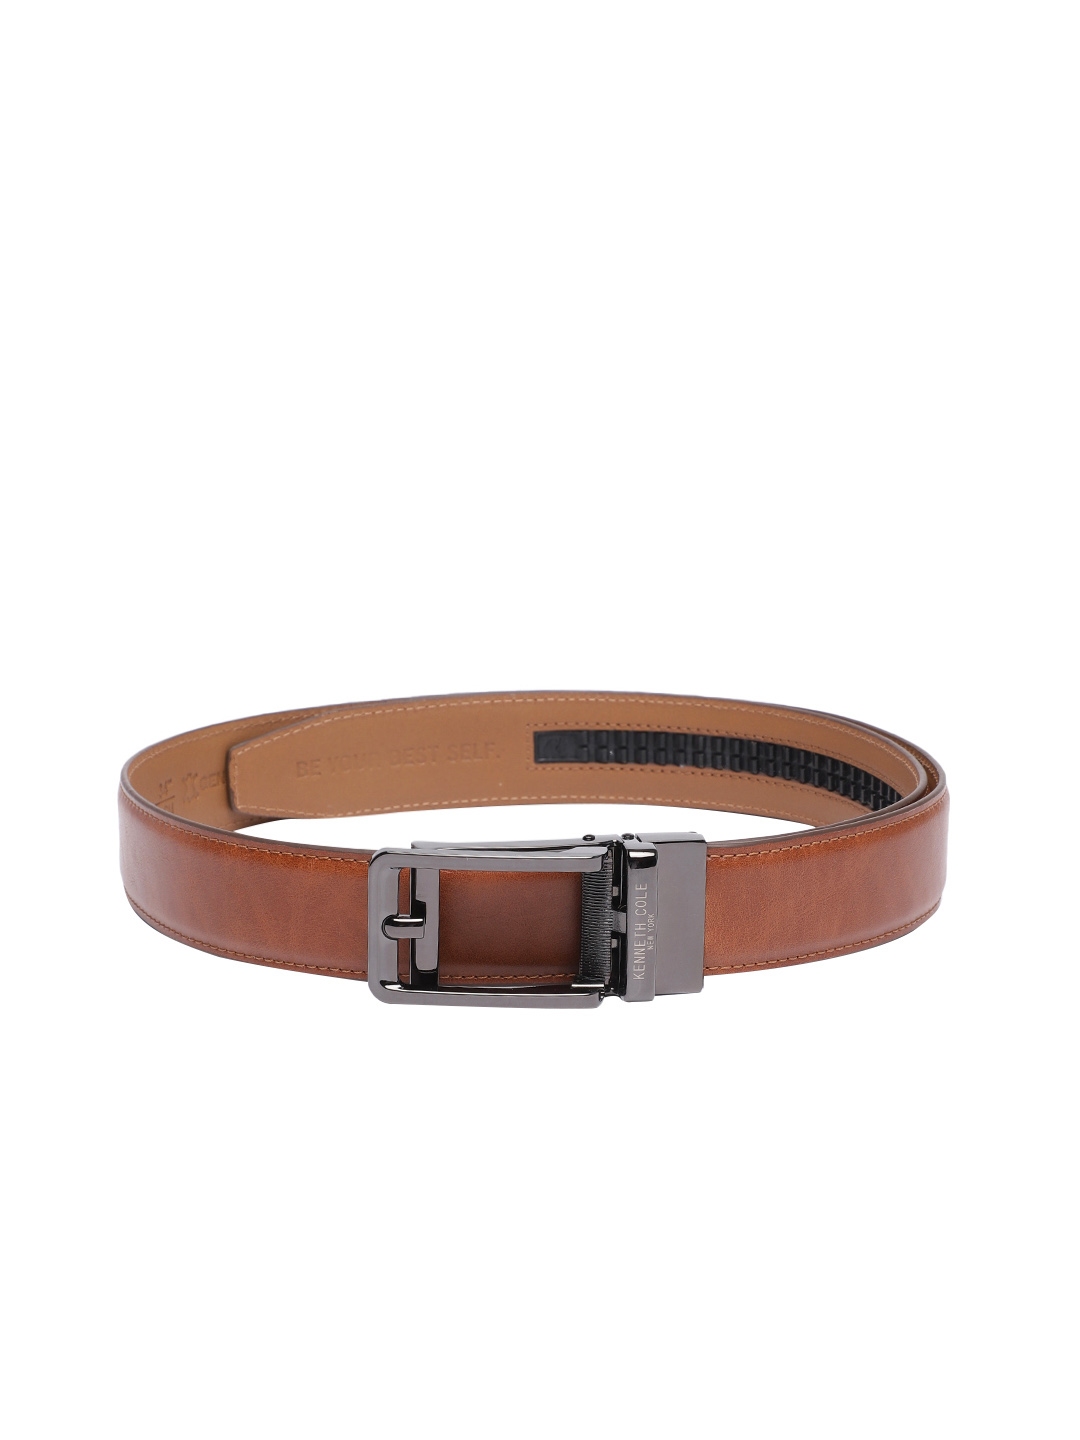 Buy Kenneth Cole Men Leather Formal Belt - Belts for Men 22012100 | Myntra